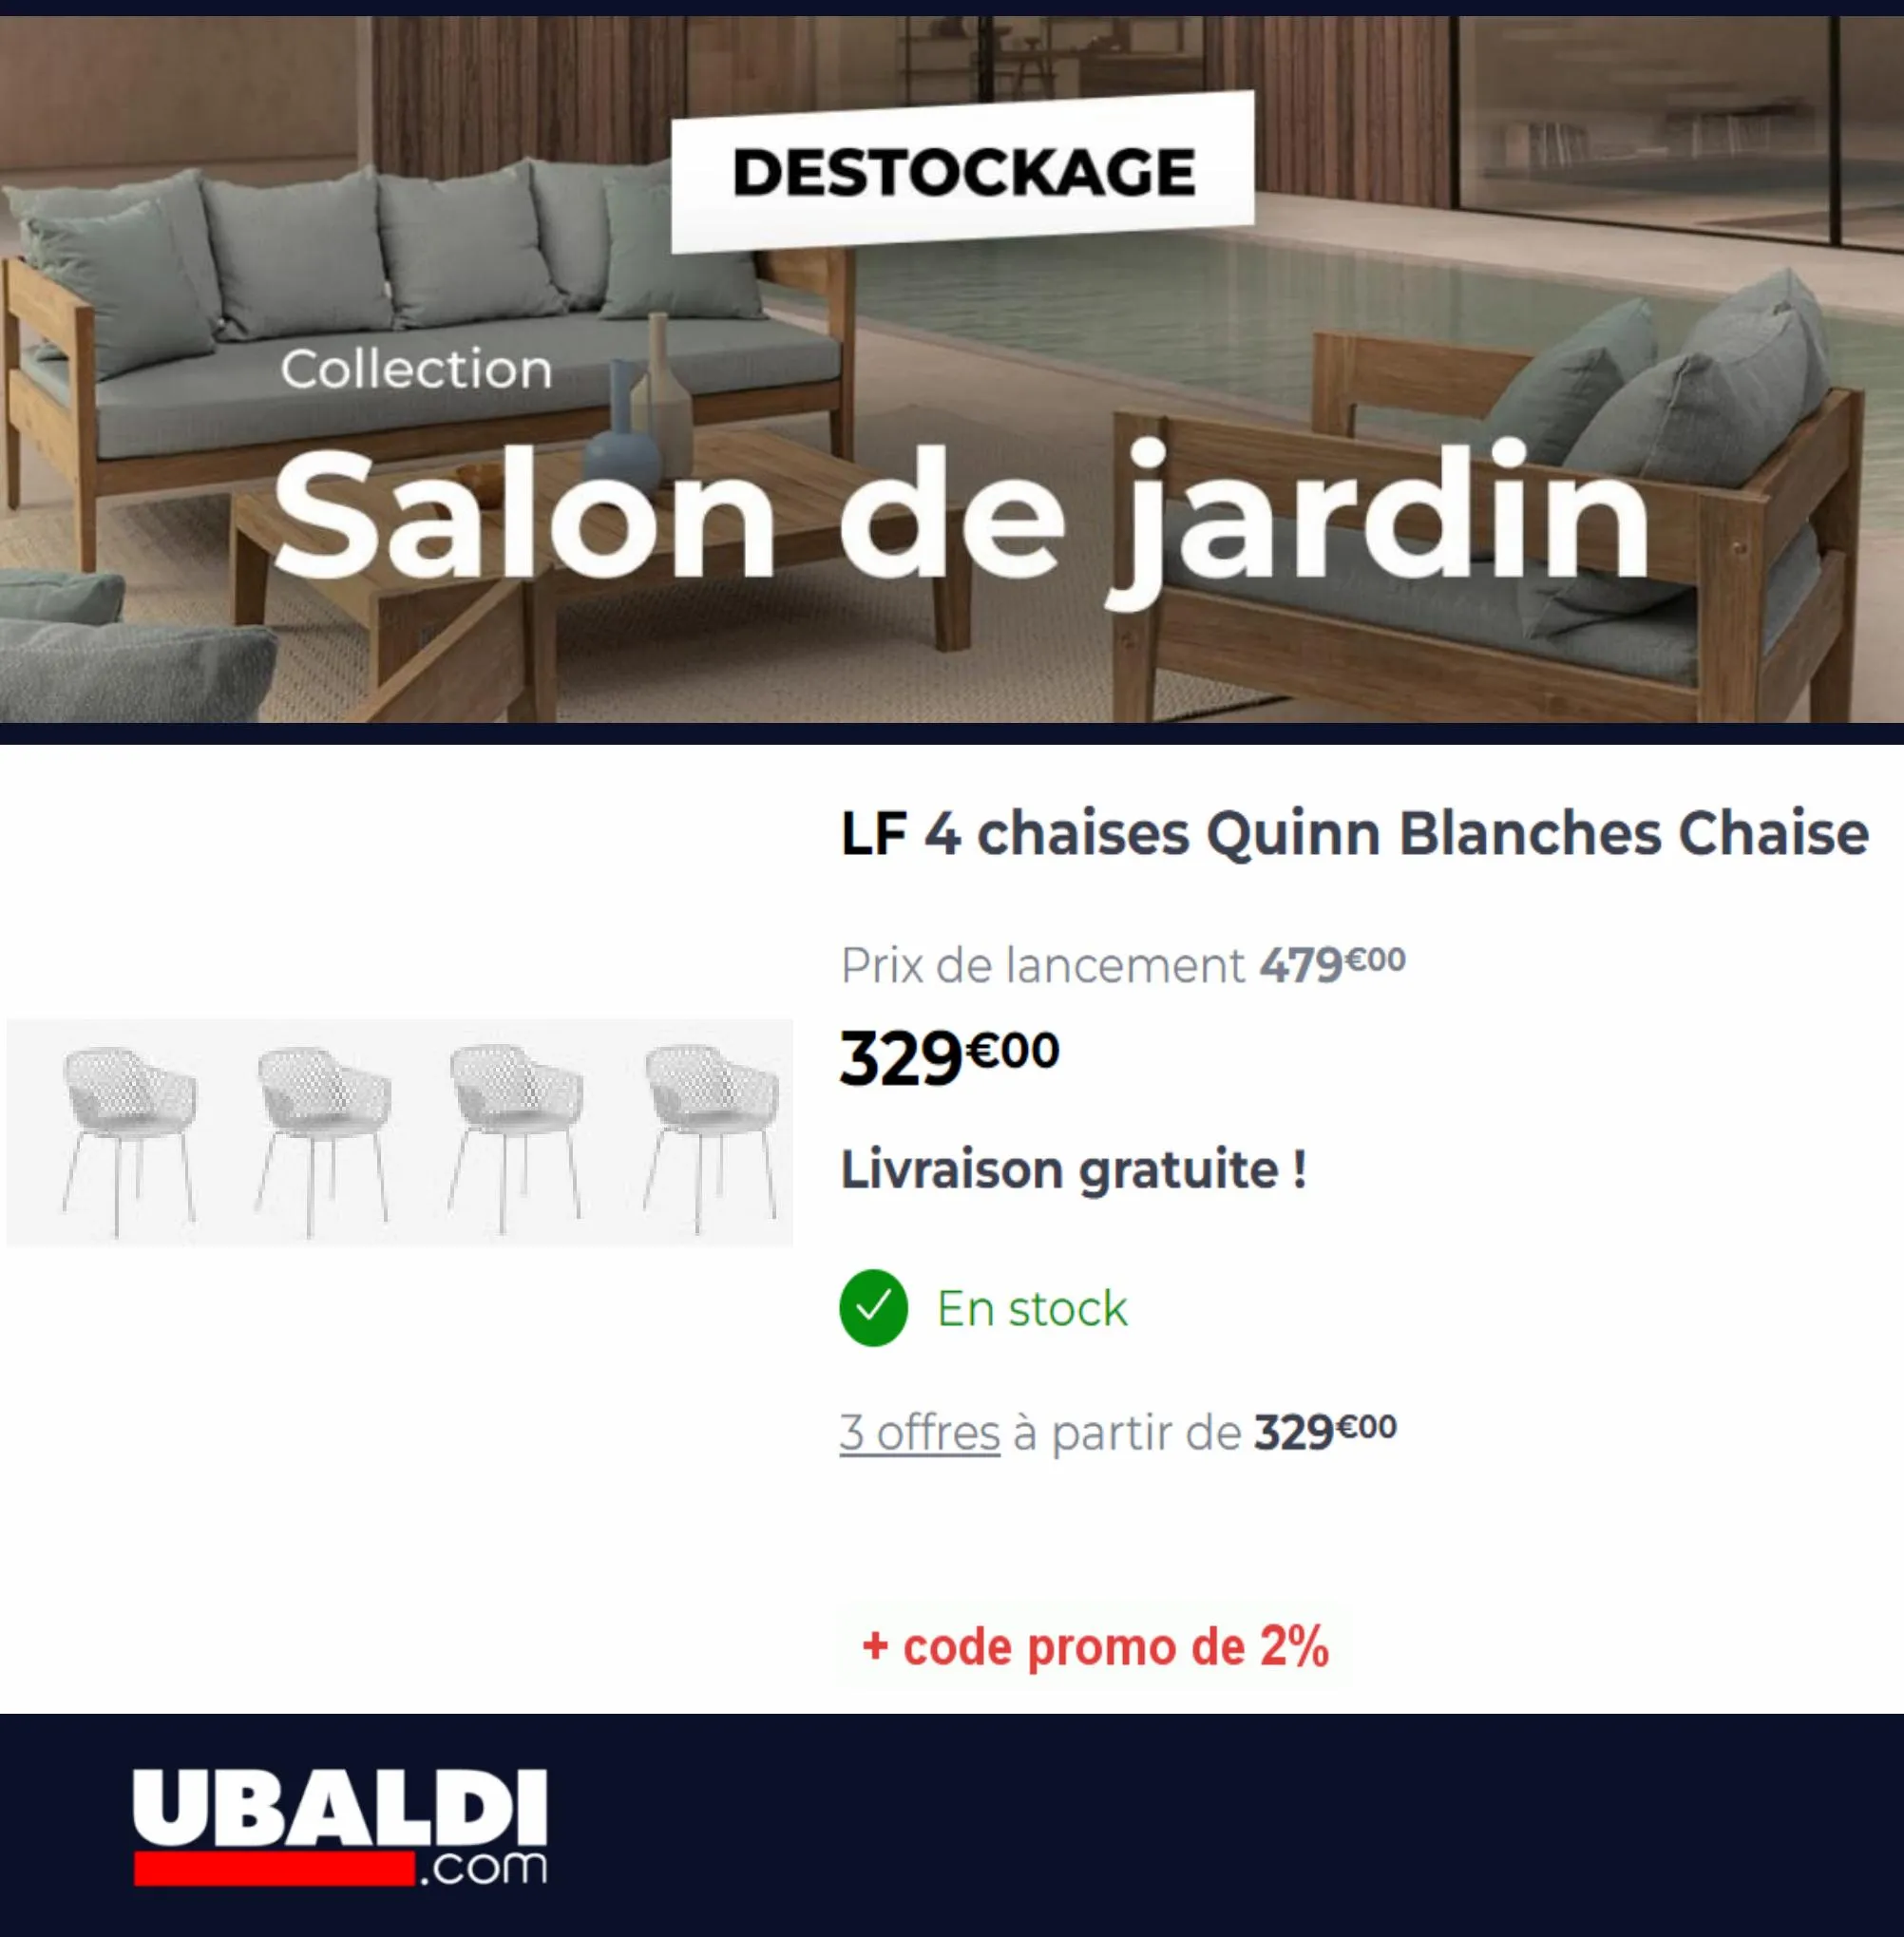 Catalogue Destockage Salon de Jardin, page 00002